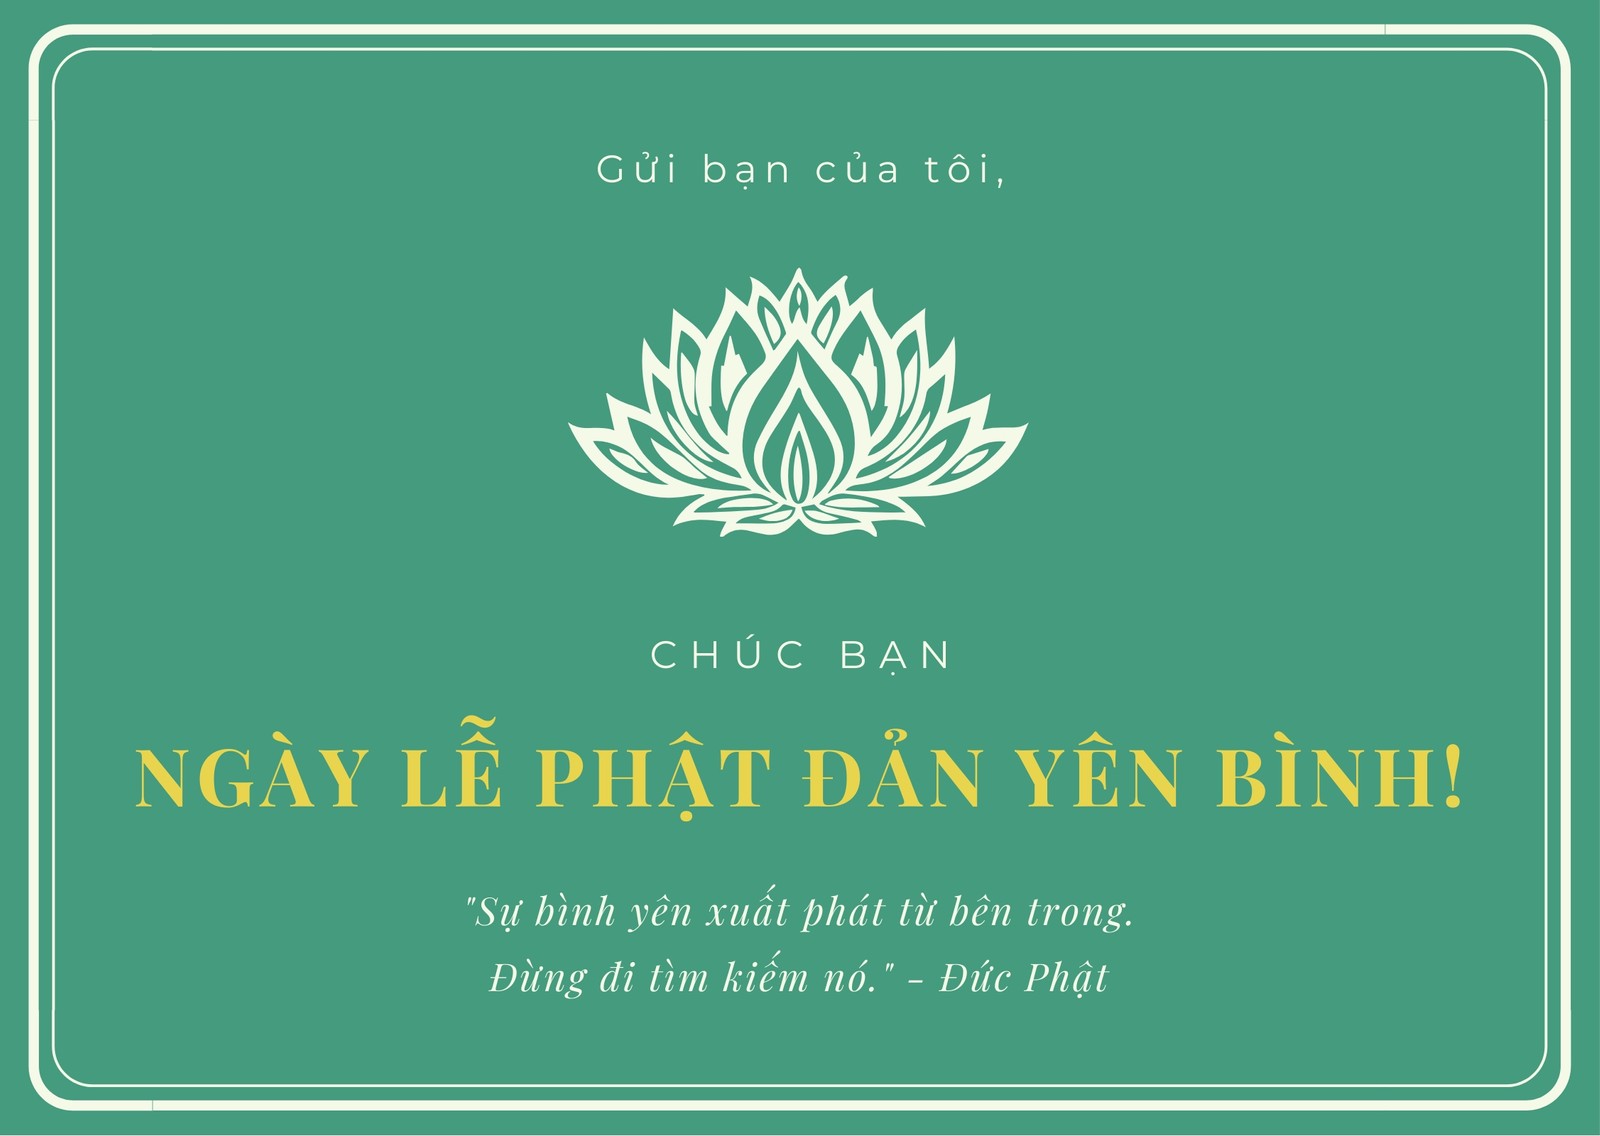 Thiệp Chúc Mừng Đa Dạng: Hình ảnh thiệp chúc mừng đa dạng từ các cộng đồng tại Việt Nam đã tạo nên một không gian ấm cúng và đa văn hóa. Hãy cùng ngắm nhìn những hình ảnh này để cảm nhận sự hoà nhã và đa sắc thái của nền văn hóa Việt.